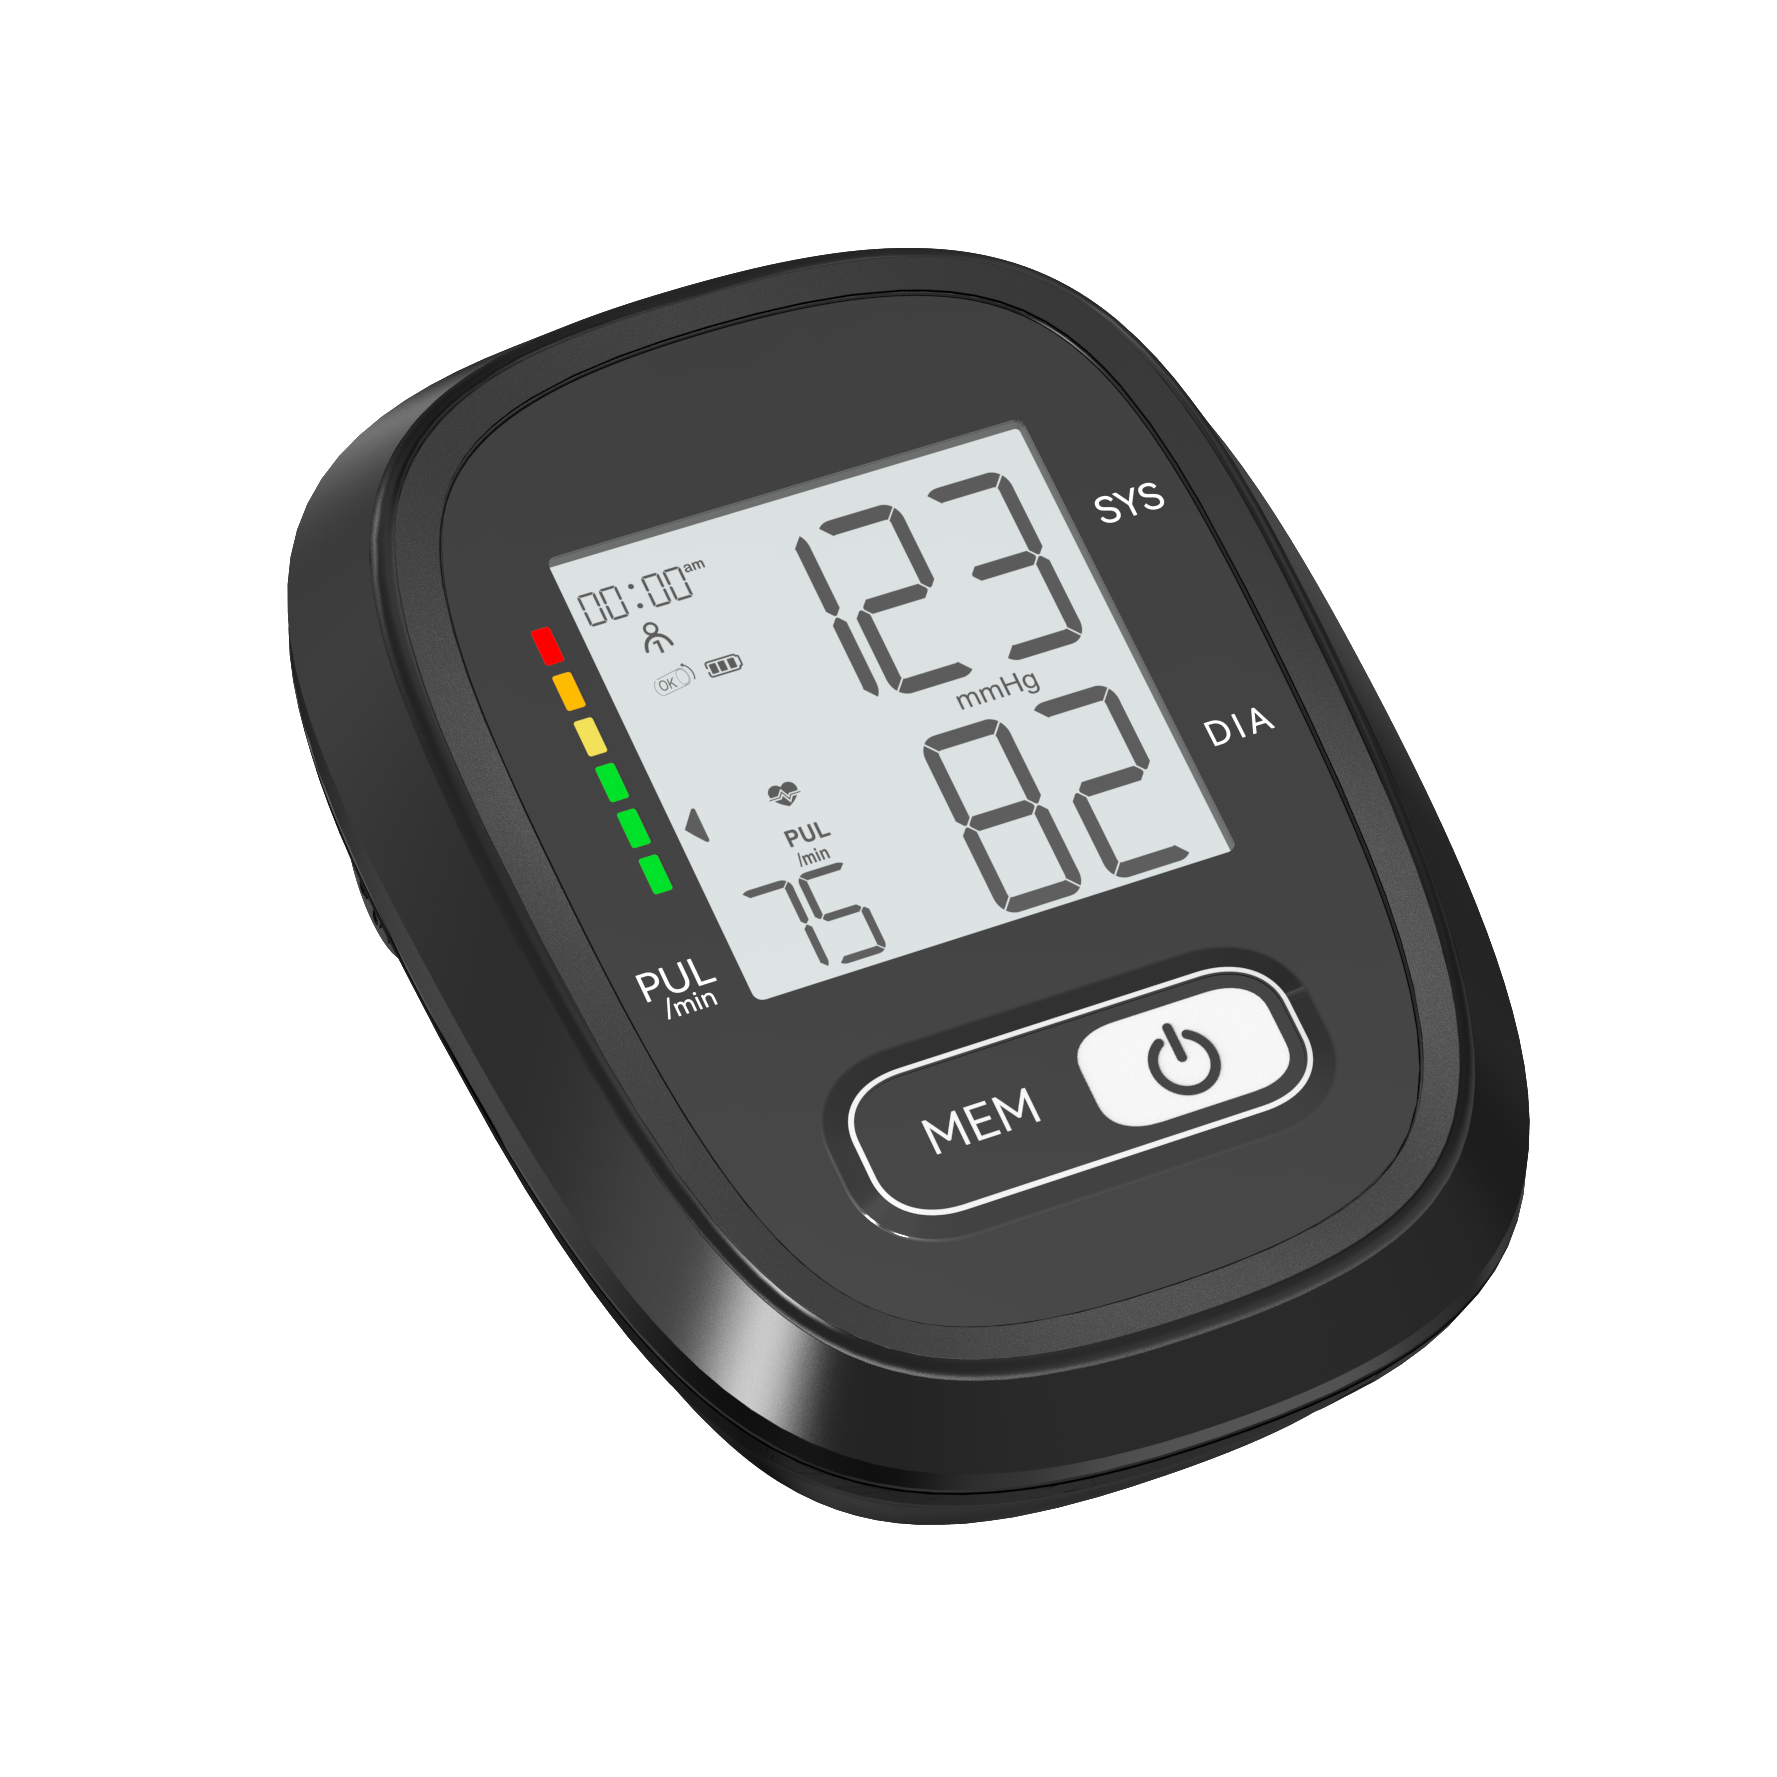 Kev Kho Mob Digital Upper Arm Blood Pressure Measuring Instrument